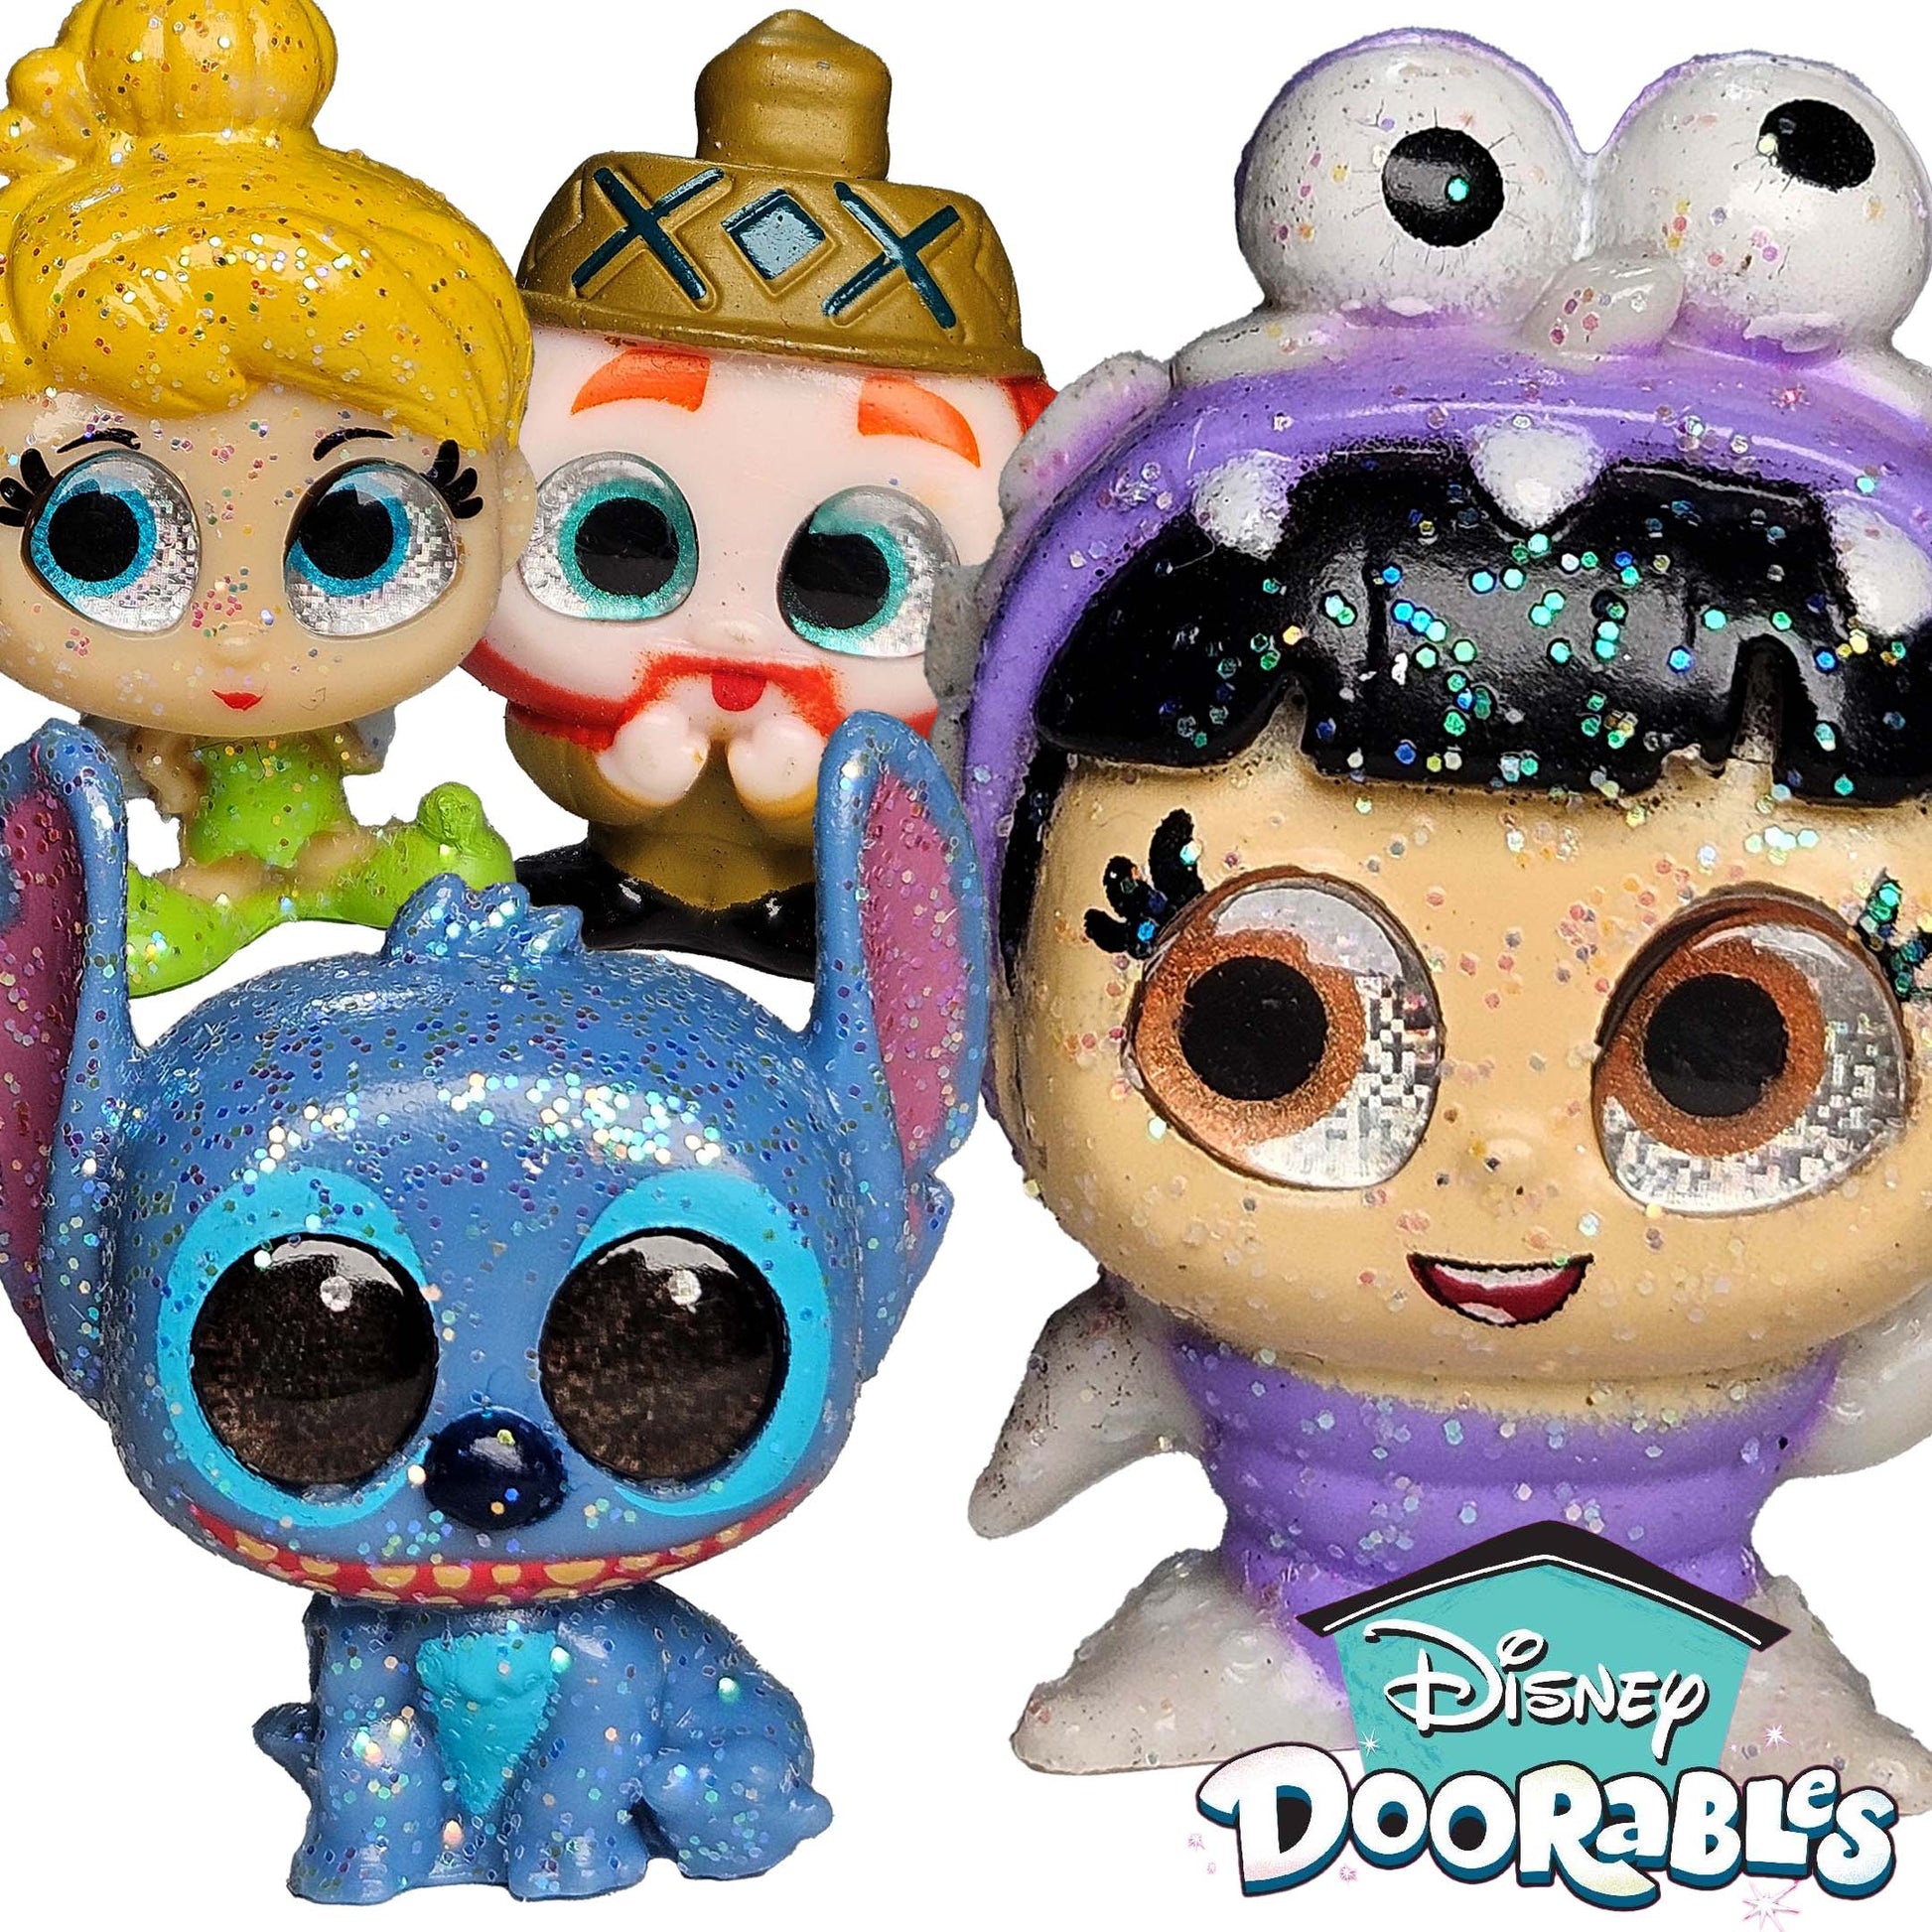 Disney Doorables Series 1